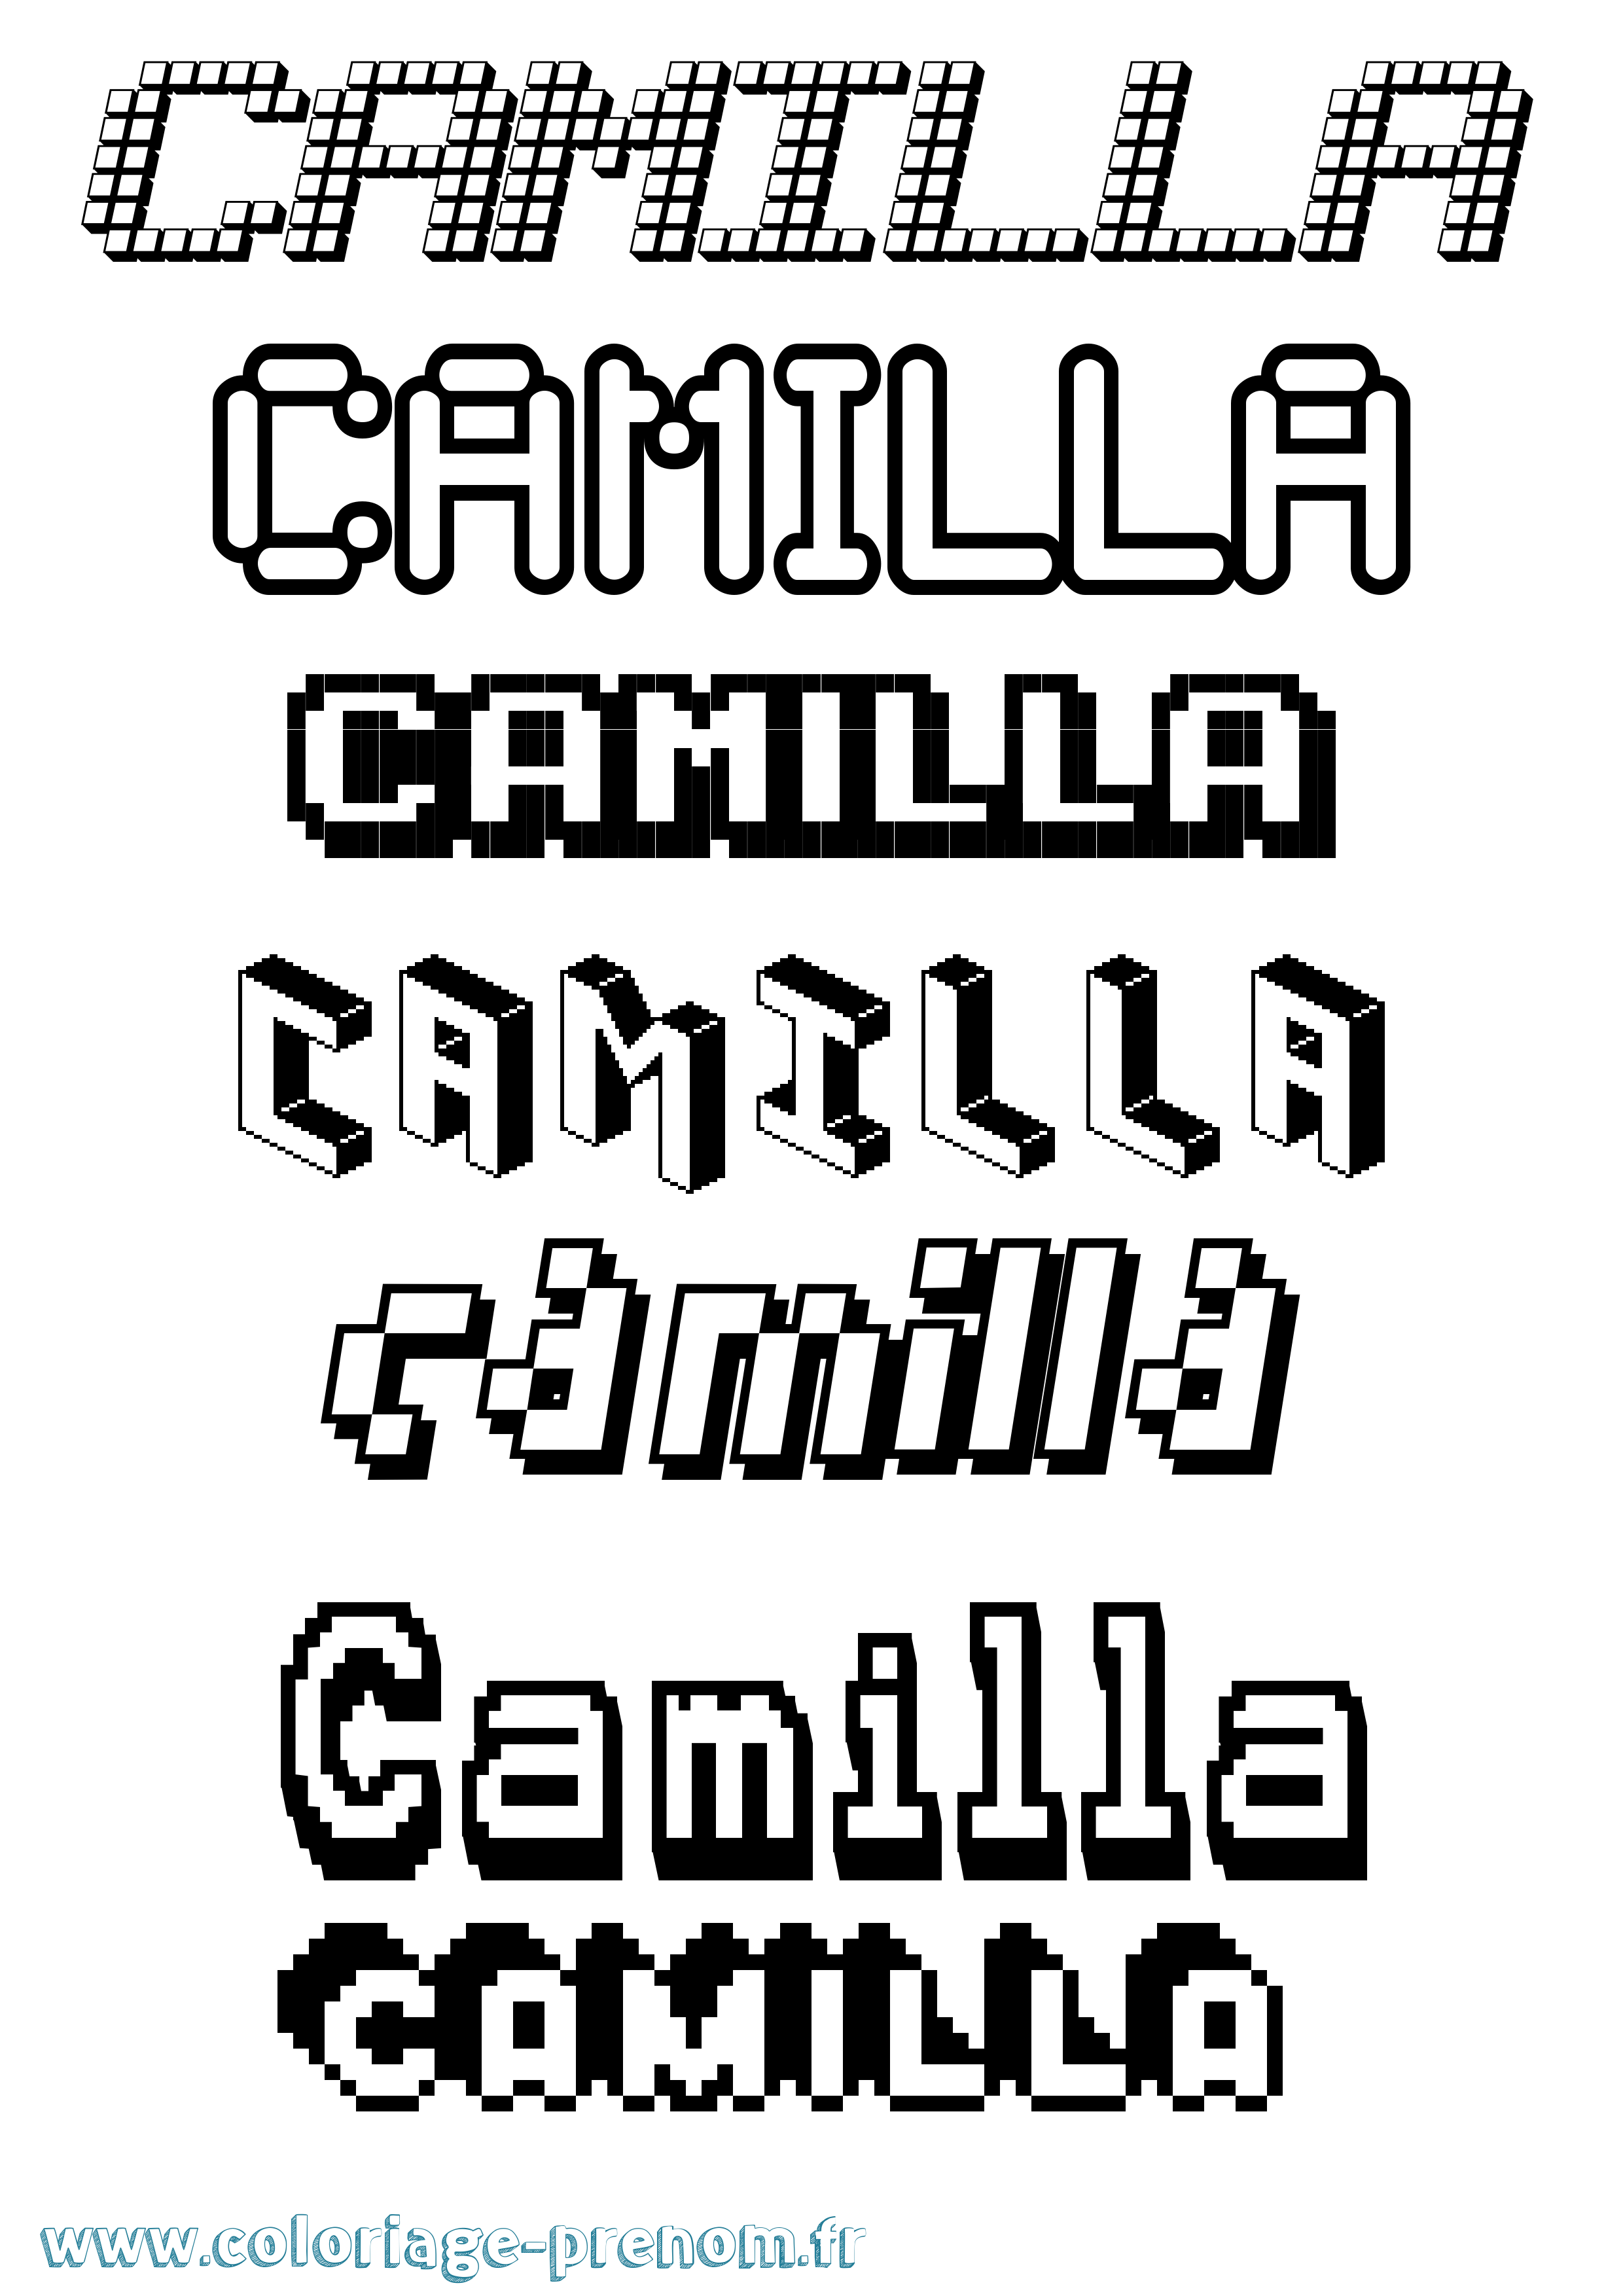 Coloriage prénom Camilla Pixel